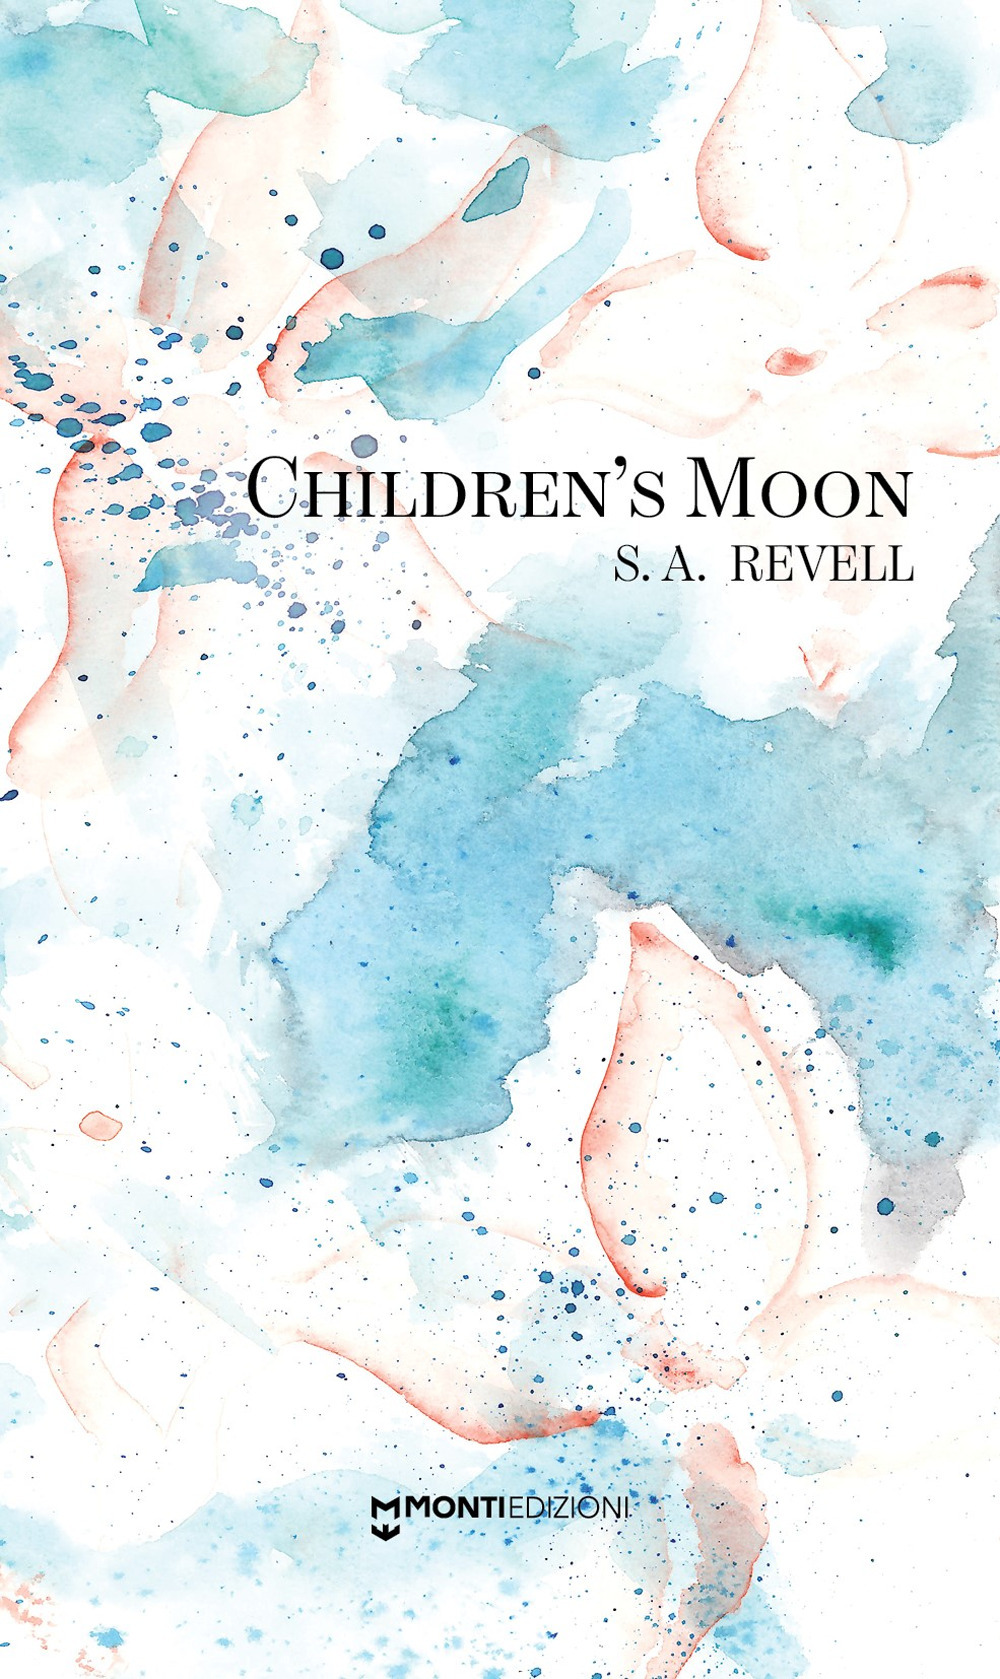 Children's moon